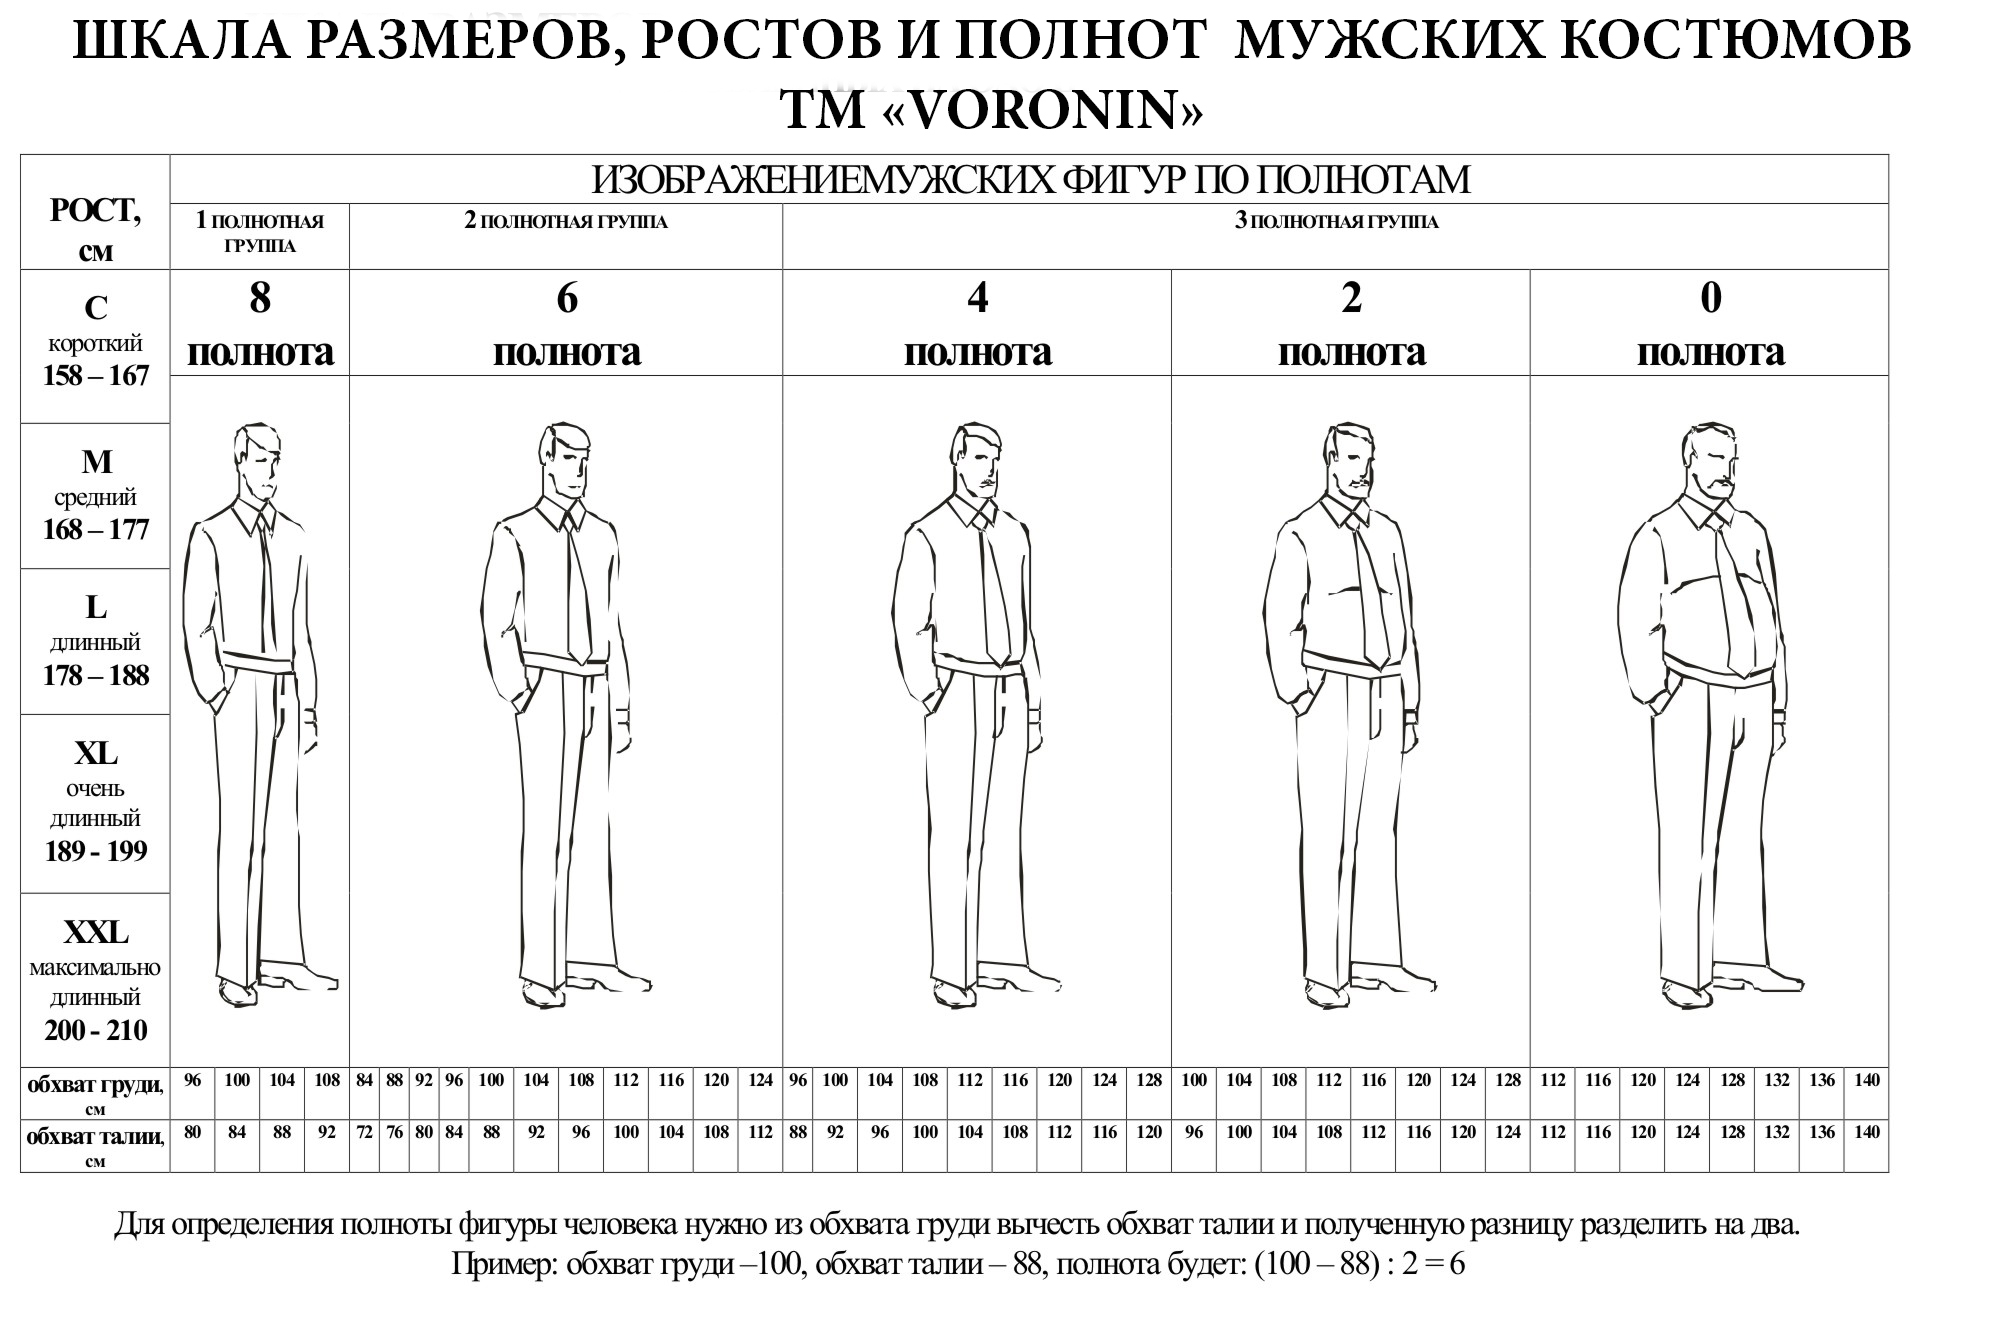 5 рост мужчины. Полнотные группы мужчин. Таблица костюмов мужских. Размеры мужских костюмов. Размер и полнота мужской одежды.